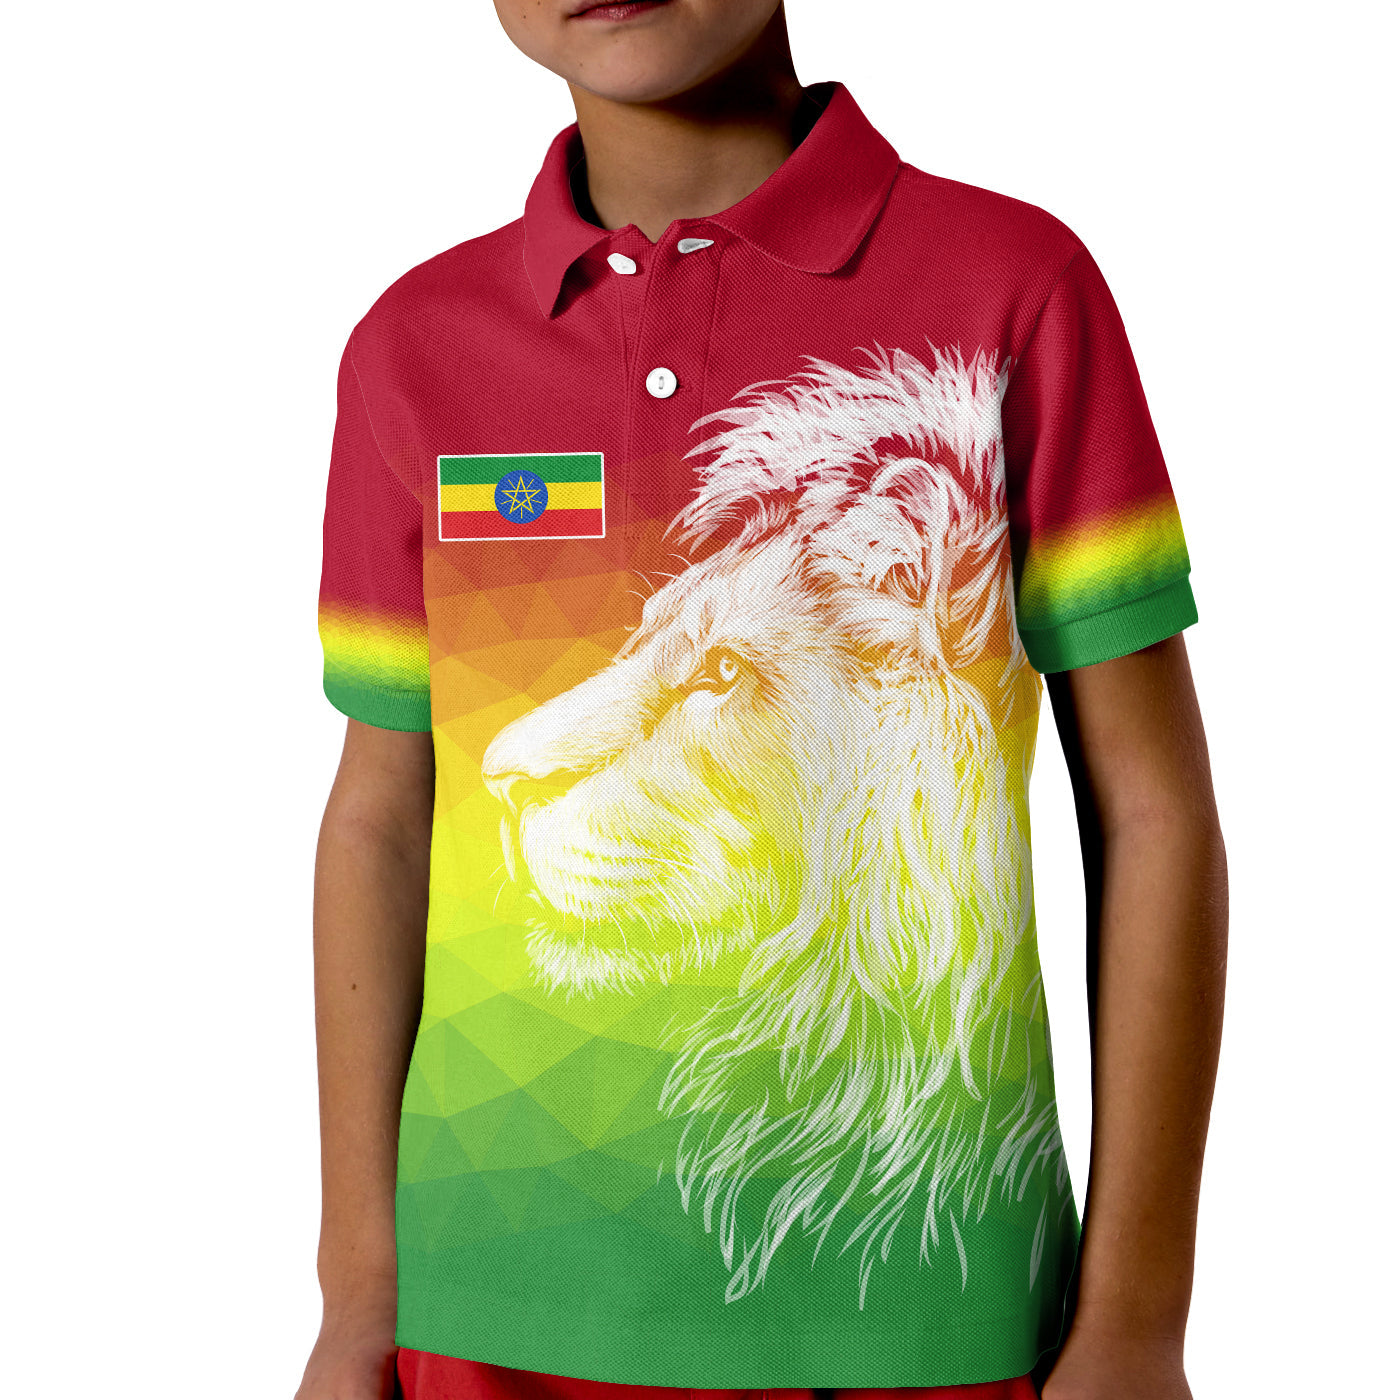 ethiopia-polo-shirt-kid-lion-ethiopian-style-flag